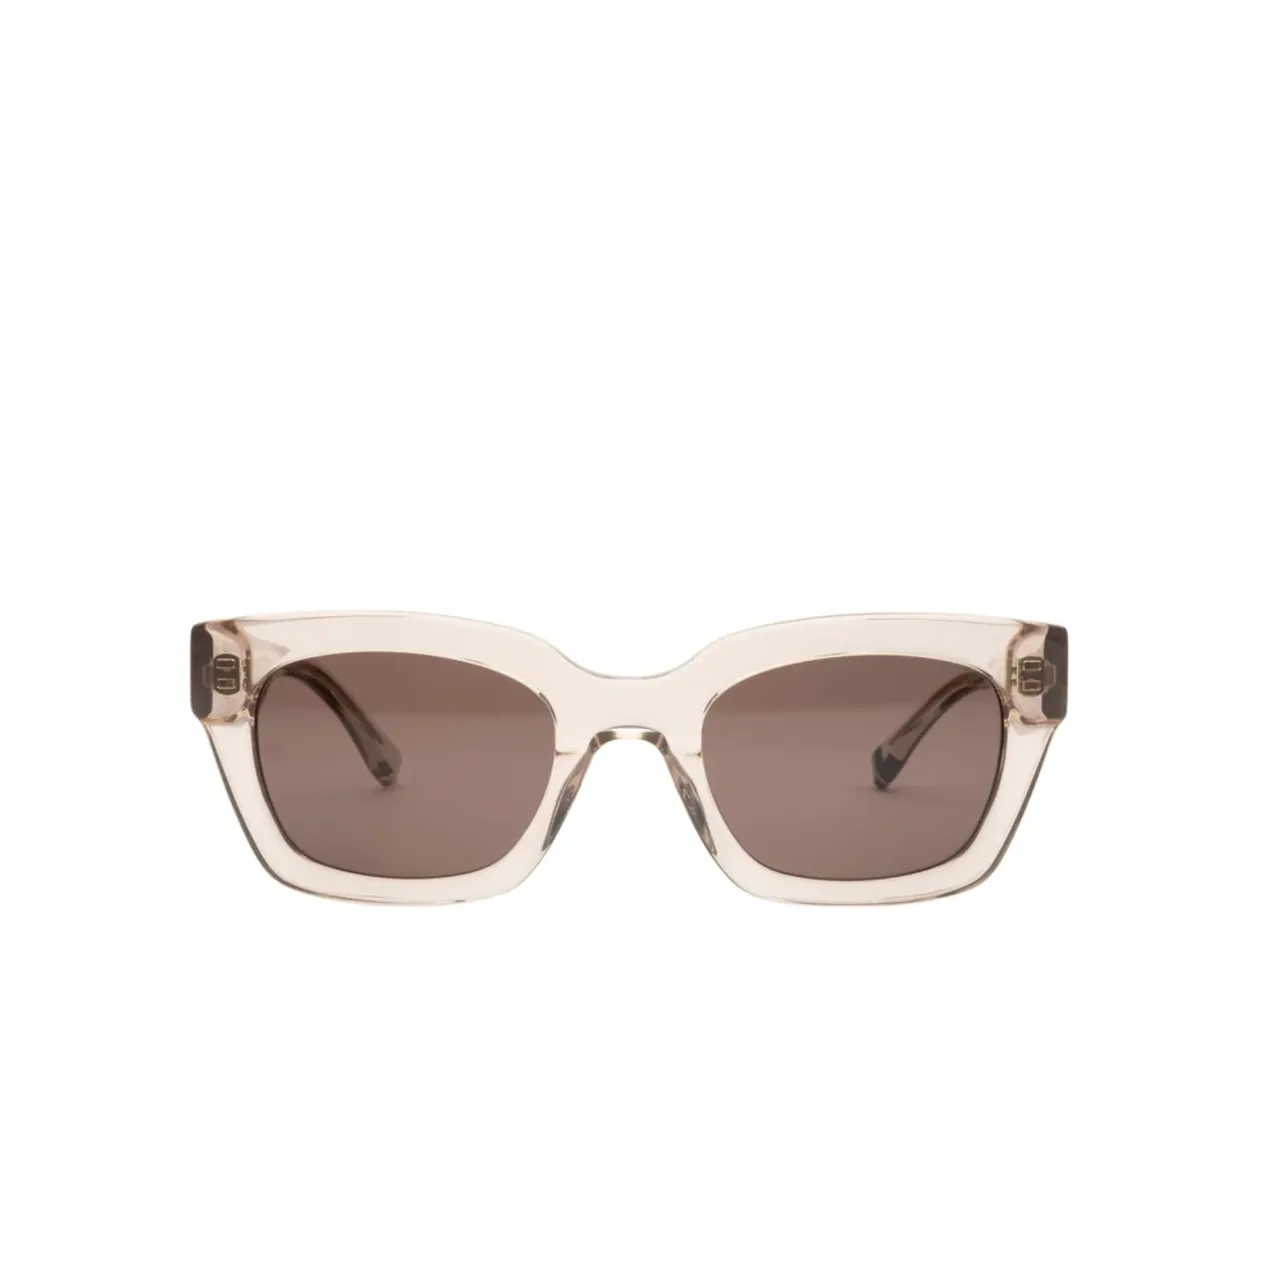 Quadratische beige Sonnenbrille mit braunen Gläsern,Quadratische Acetat Damen Sonnenbrille in Beige Tommy Hilfiger